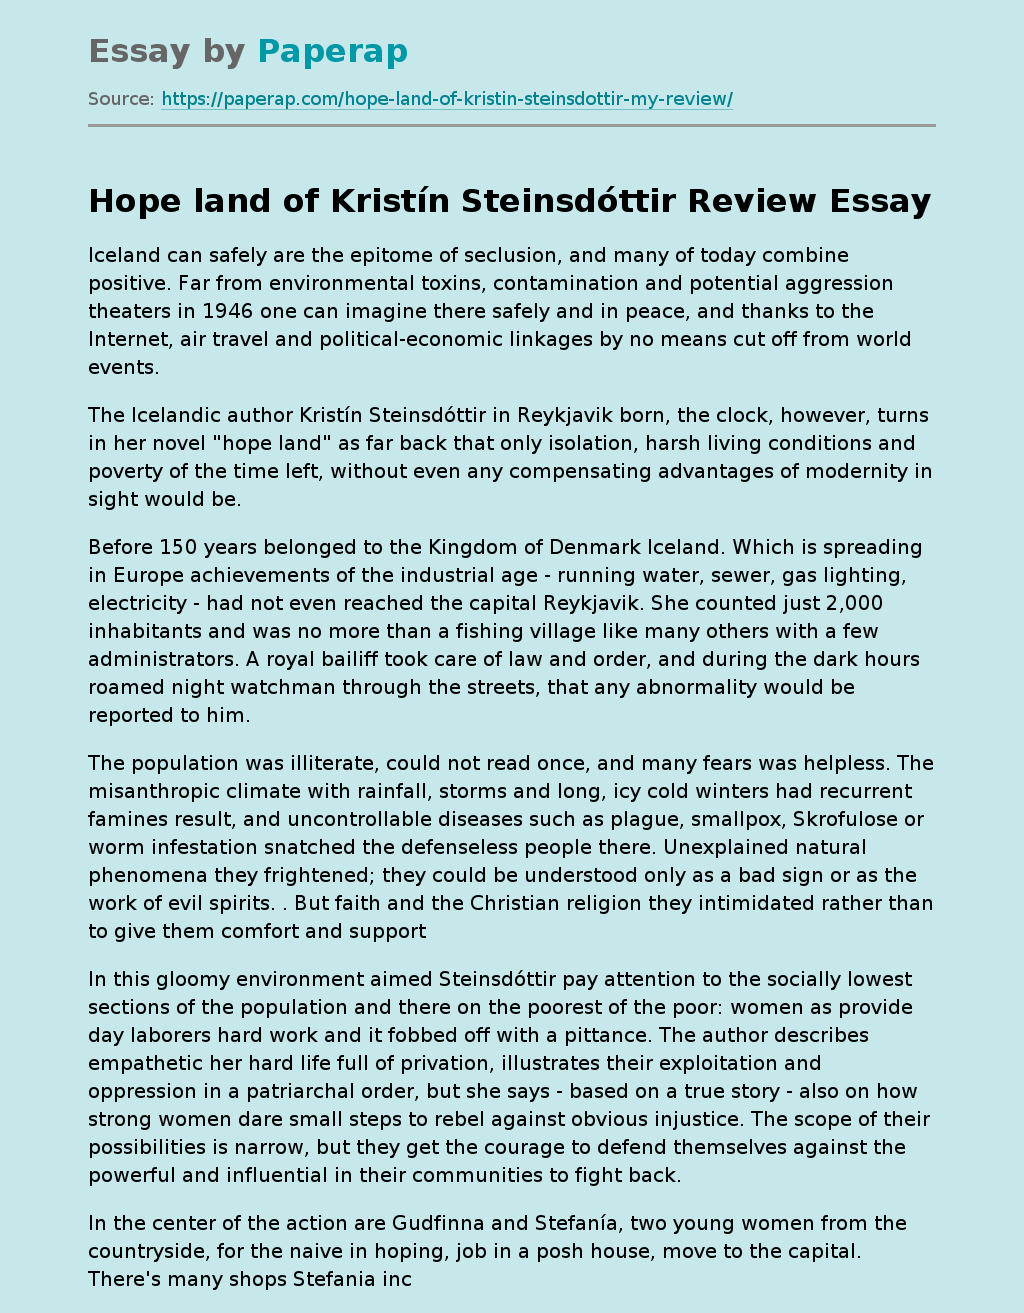 “Hope Land” of Kristín Steinsdóttir